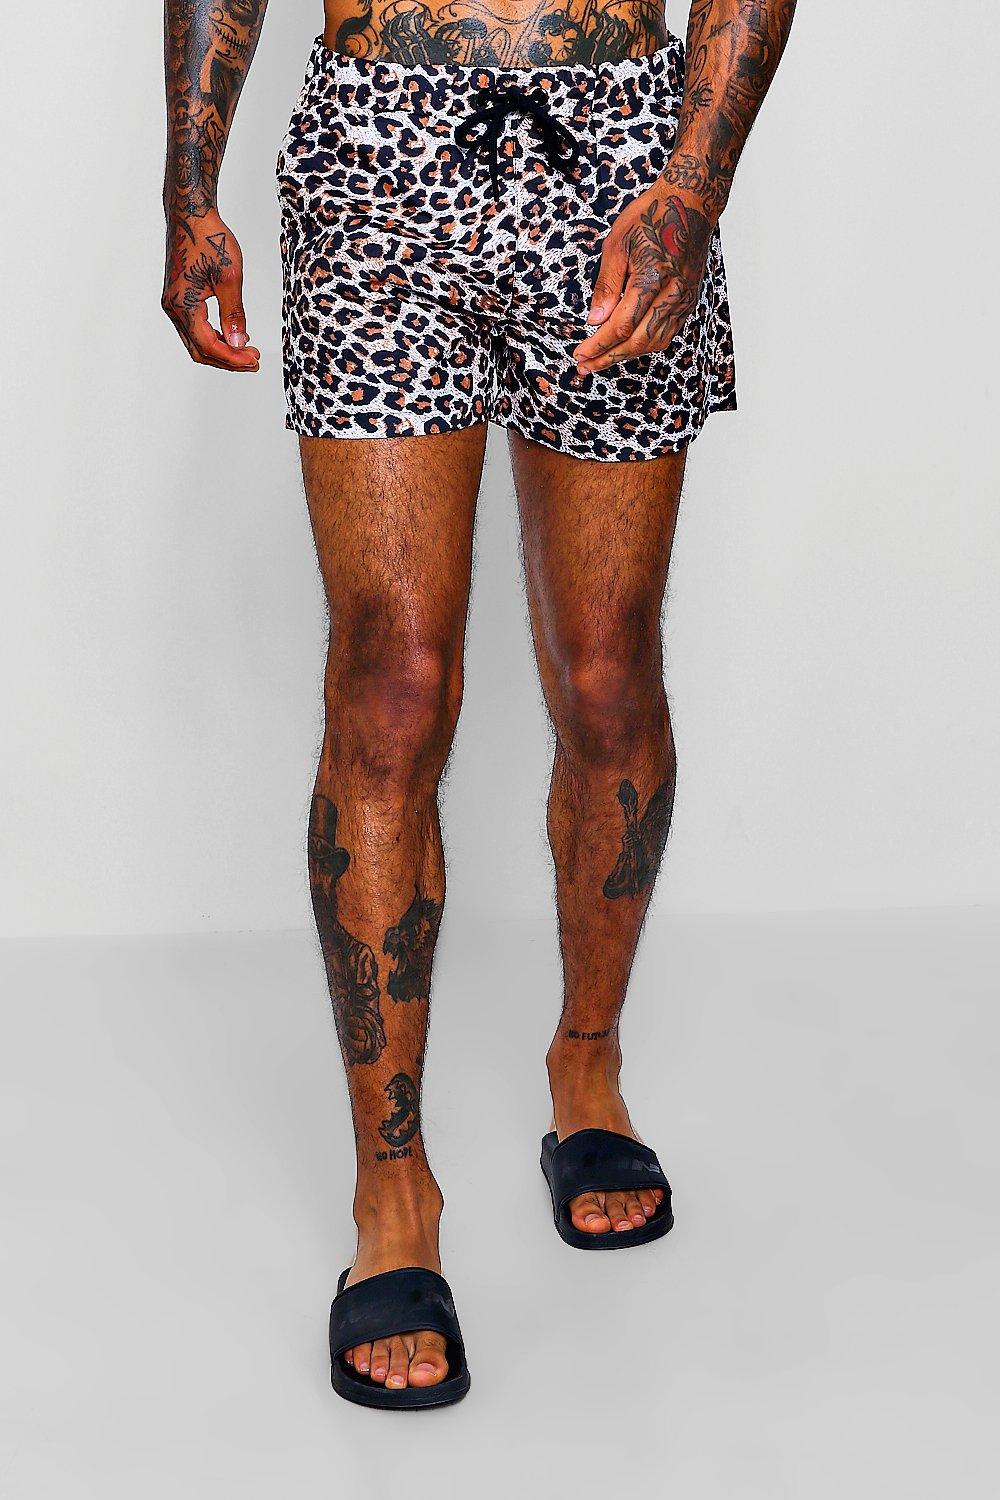 LianLiYa Mens Leopard Print Printed Summer Shorts No Mesh Lining